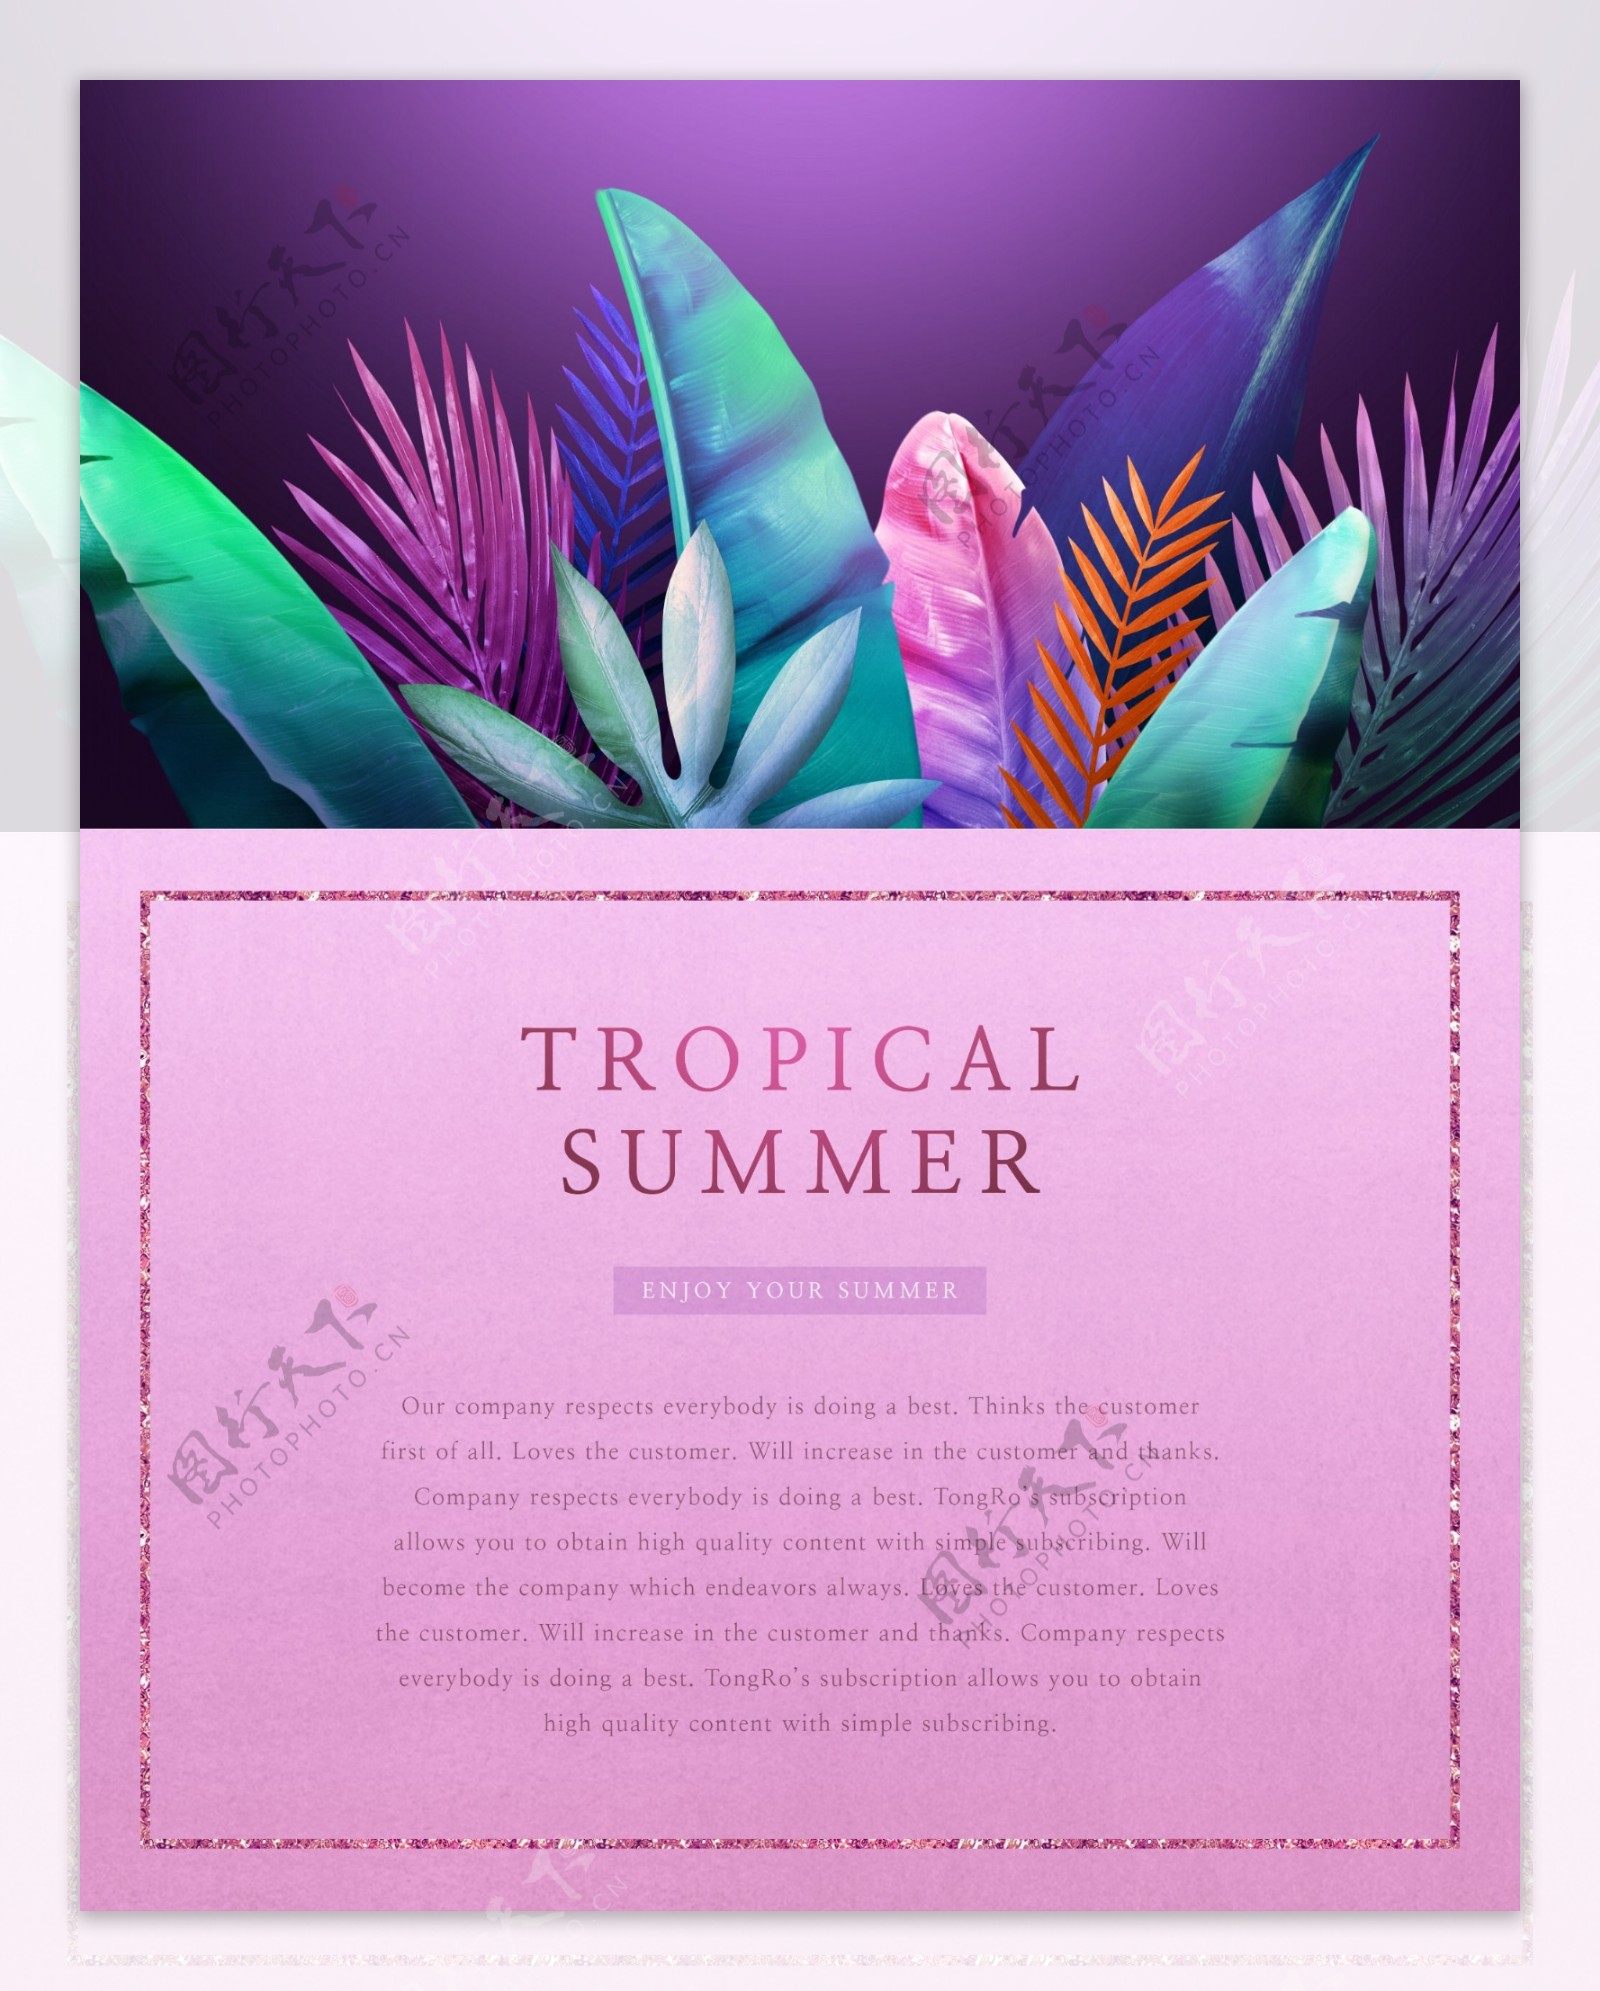 夏季热带植物花卉海报设计素材